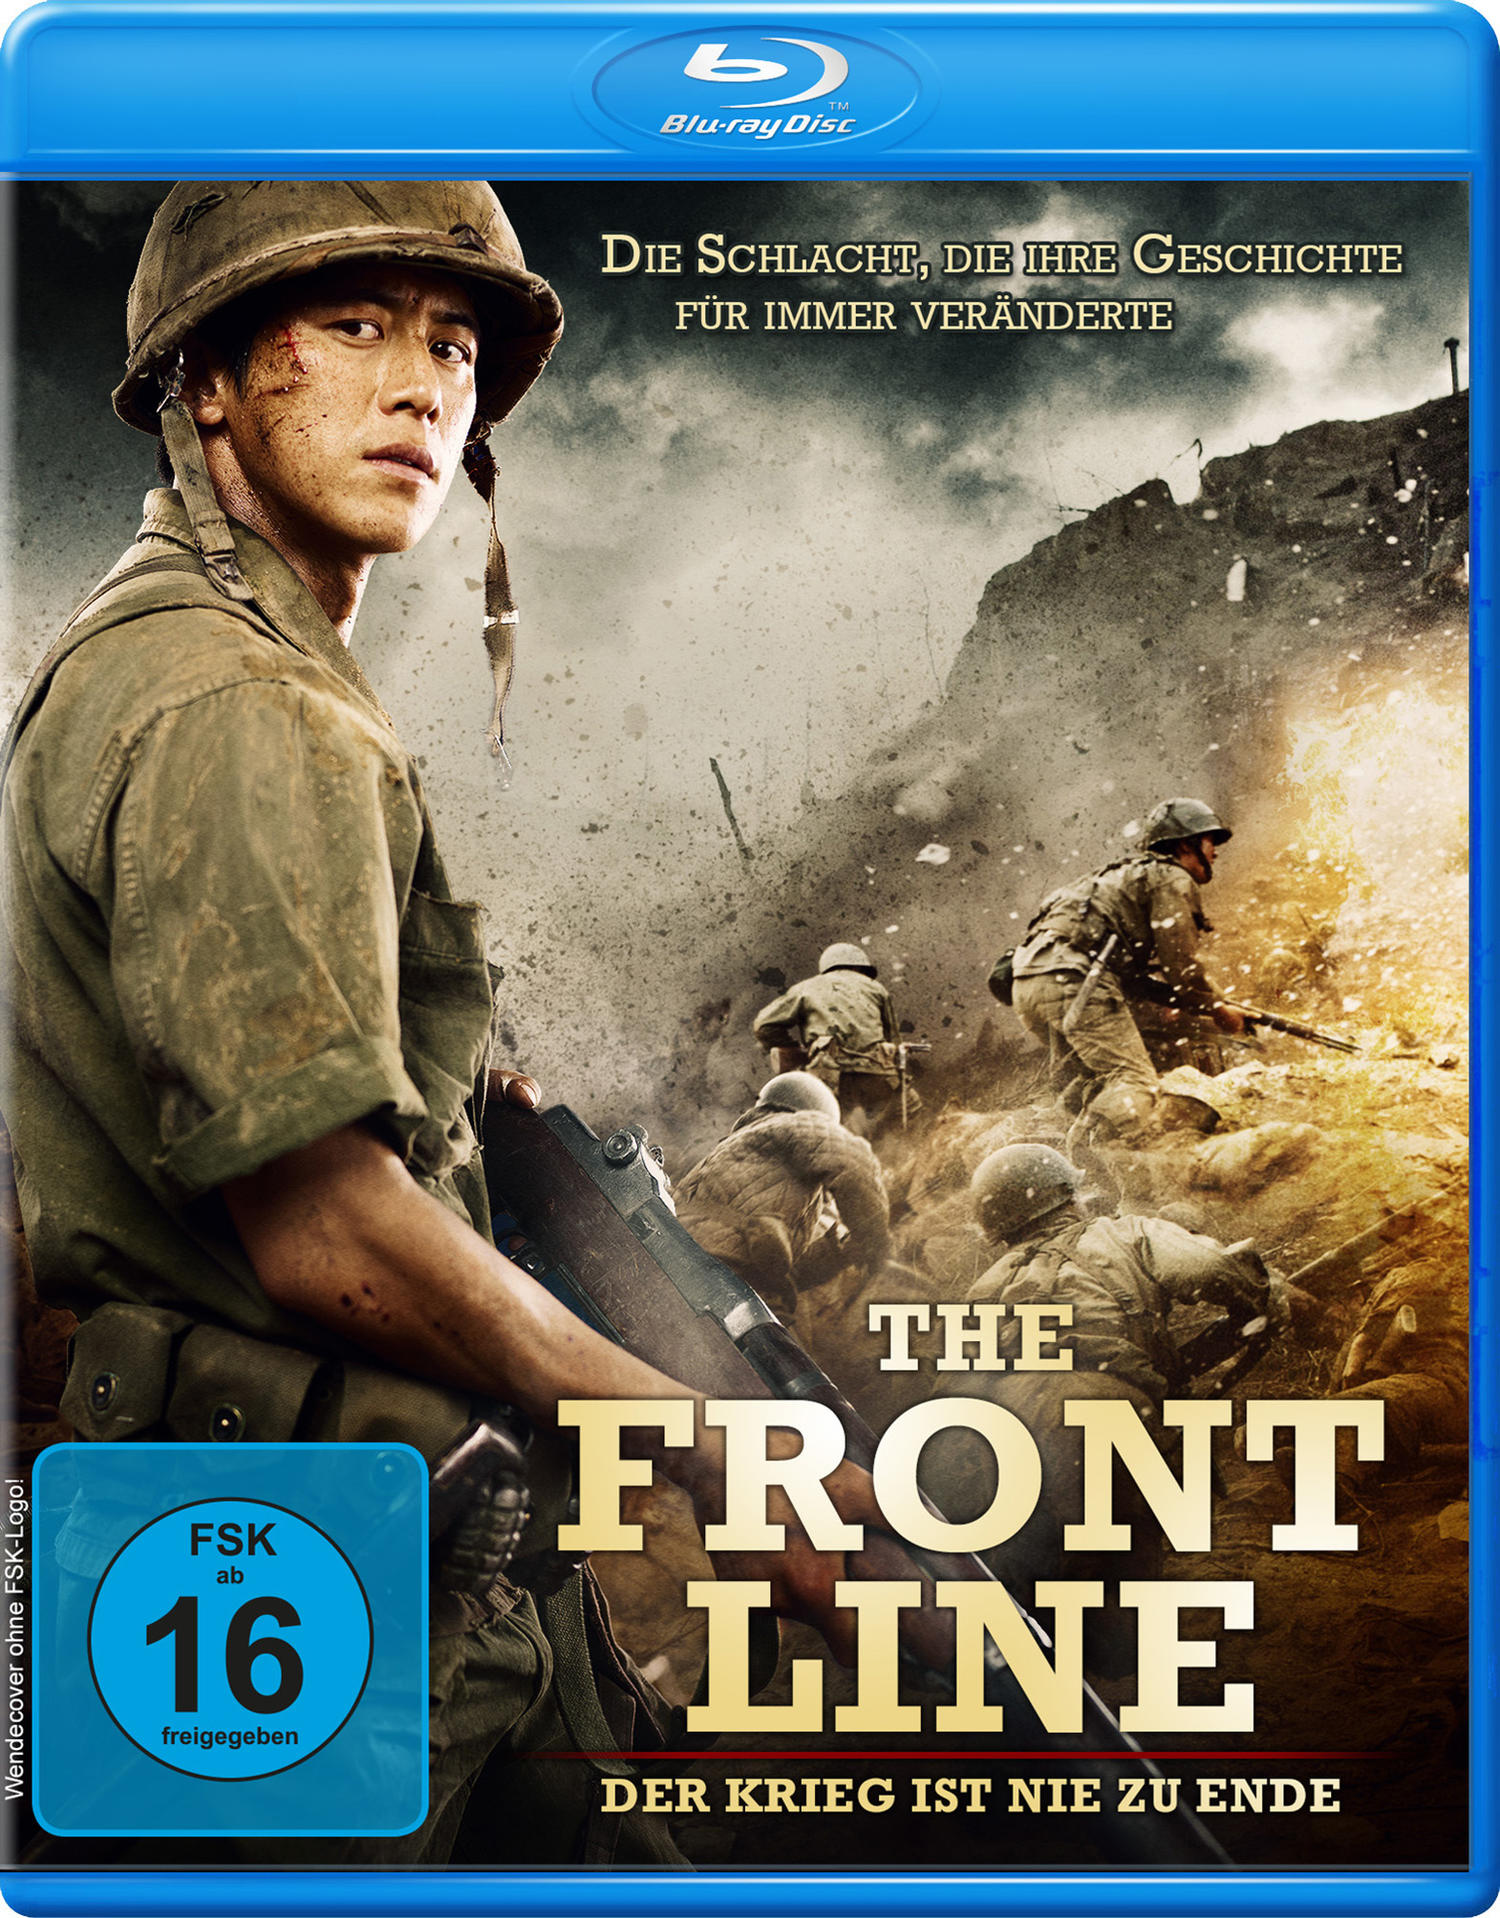 The Front Line - Blu-ray zu nie Ende Der ist Krieg